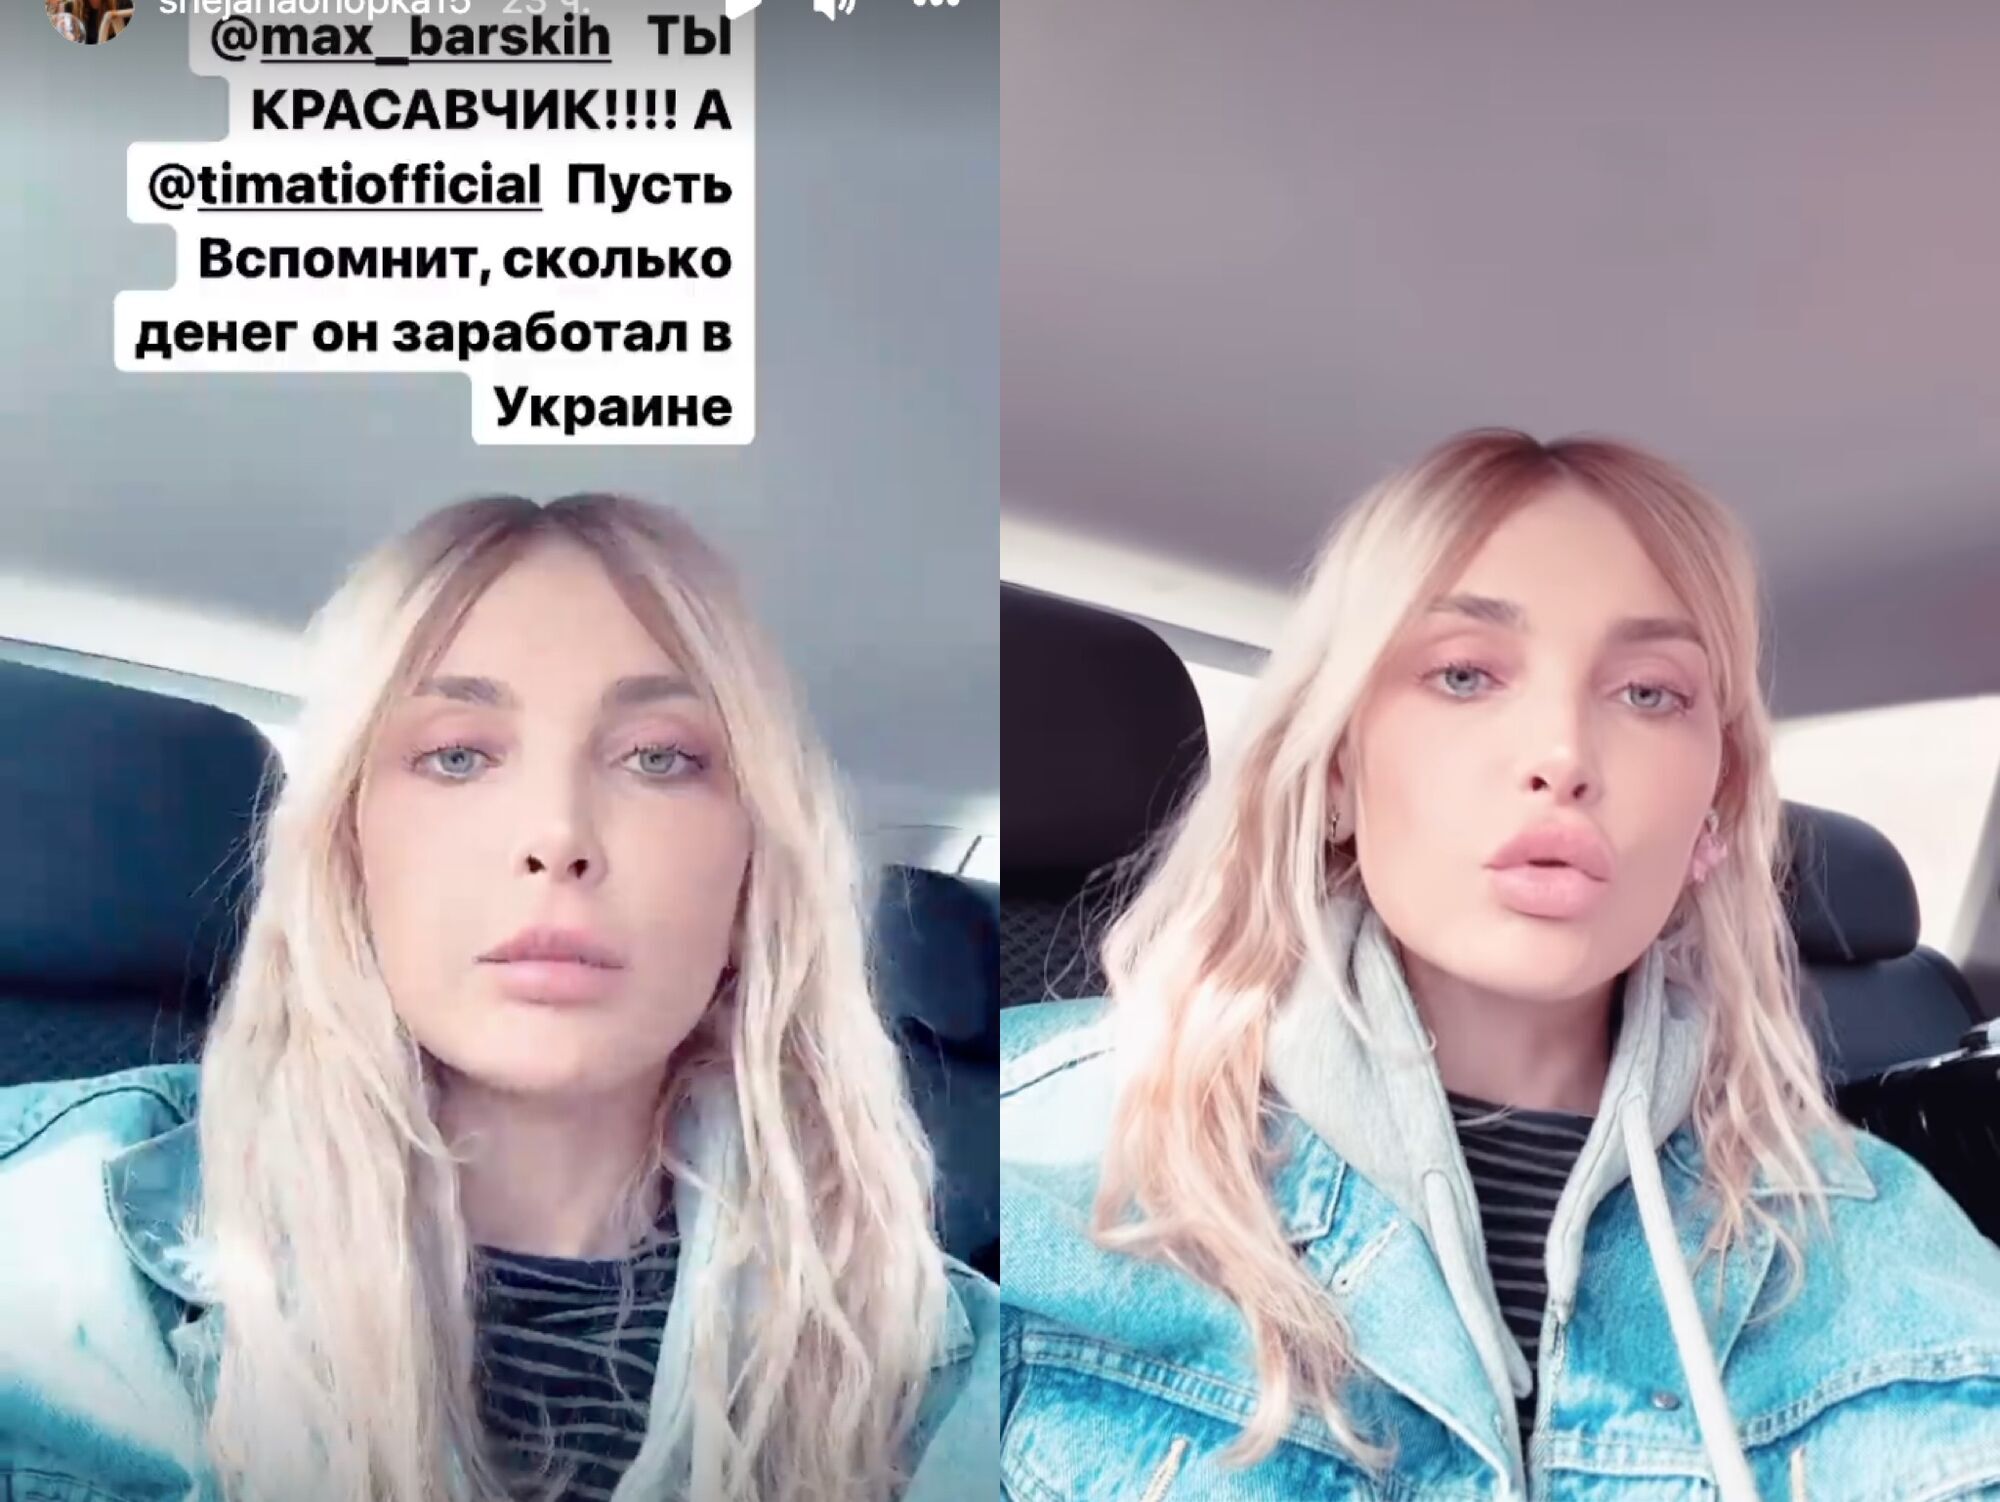 Топ-модель Снежана Онопко заступилась за Барских и напомнила Тимати, как он зарабатывал в Украине